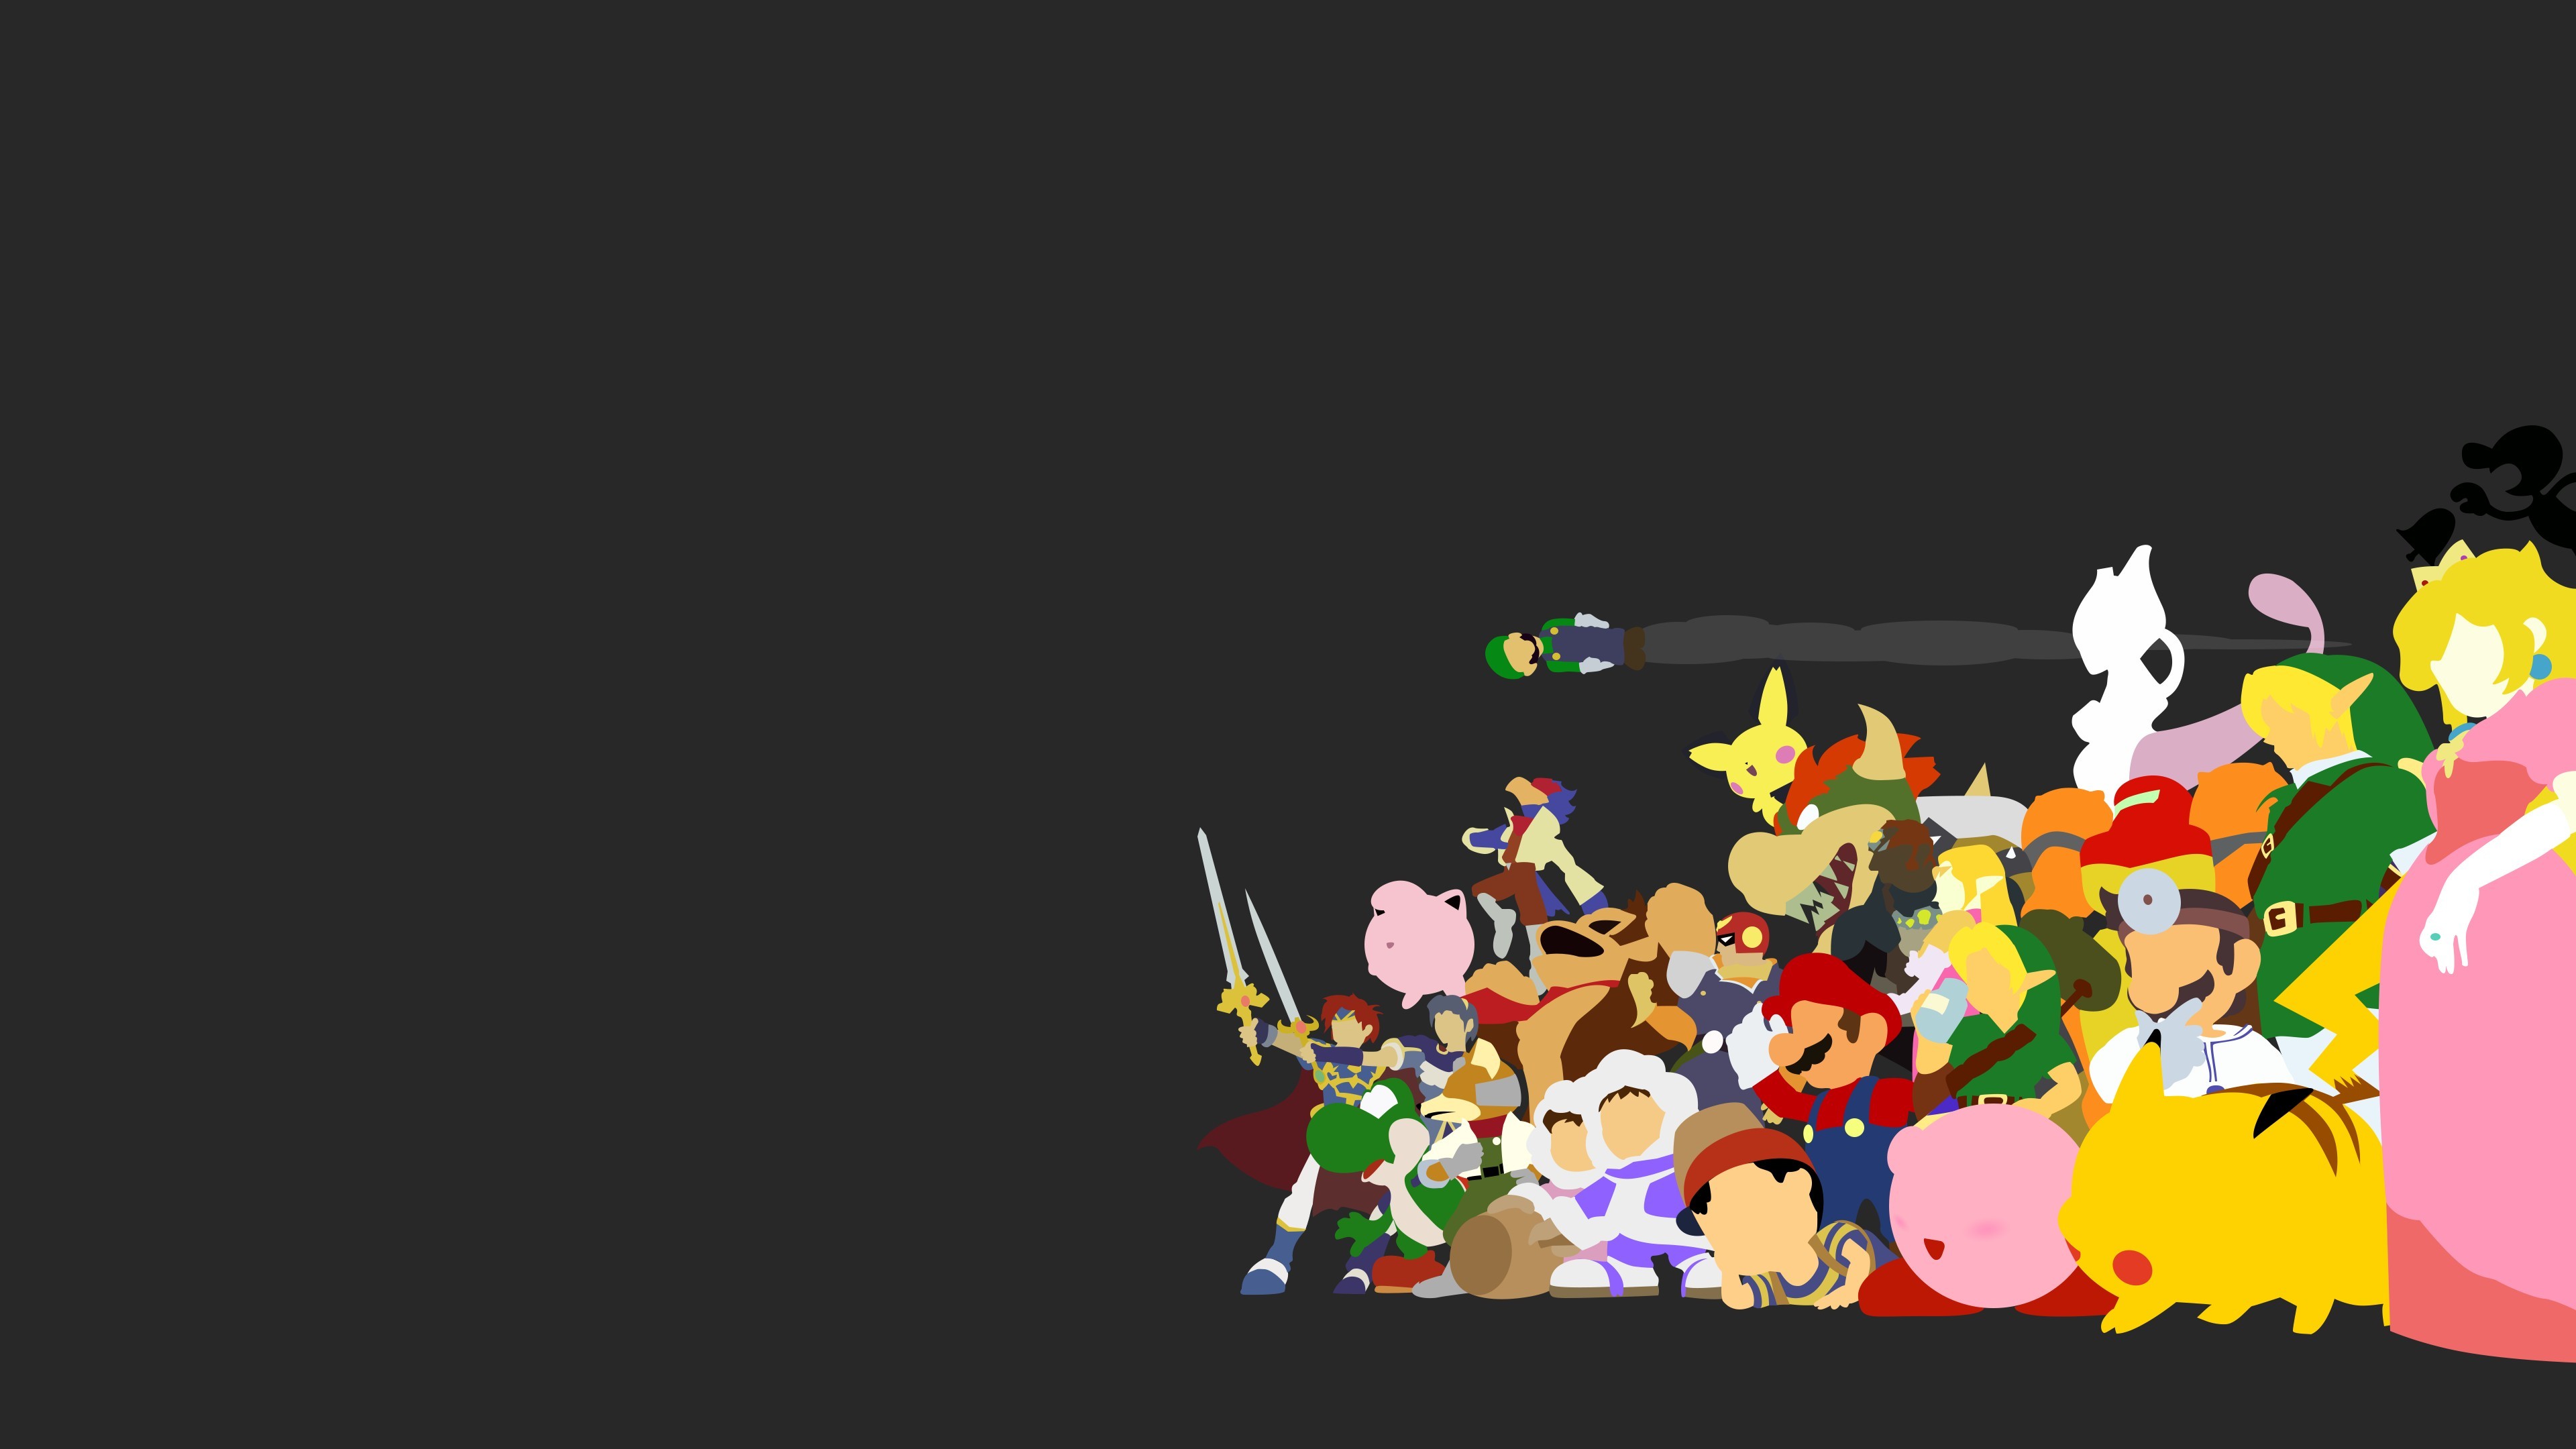 Super Smash Bros. Melee 4k Ultra HD Wallpaper | Background Image